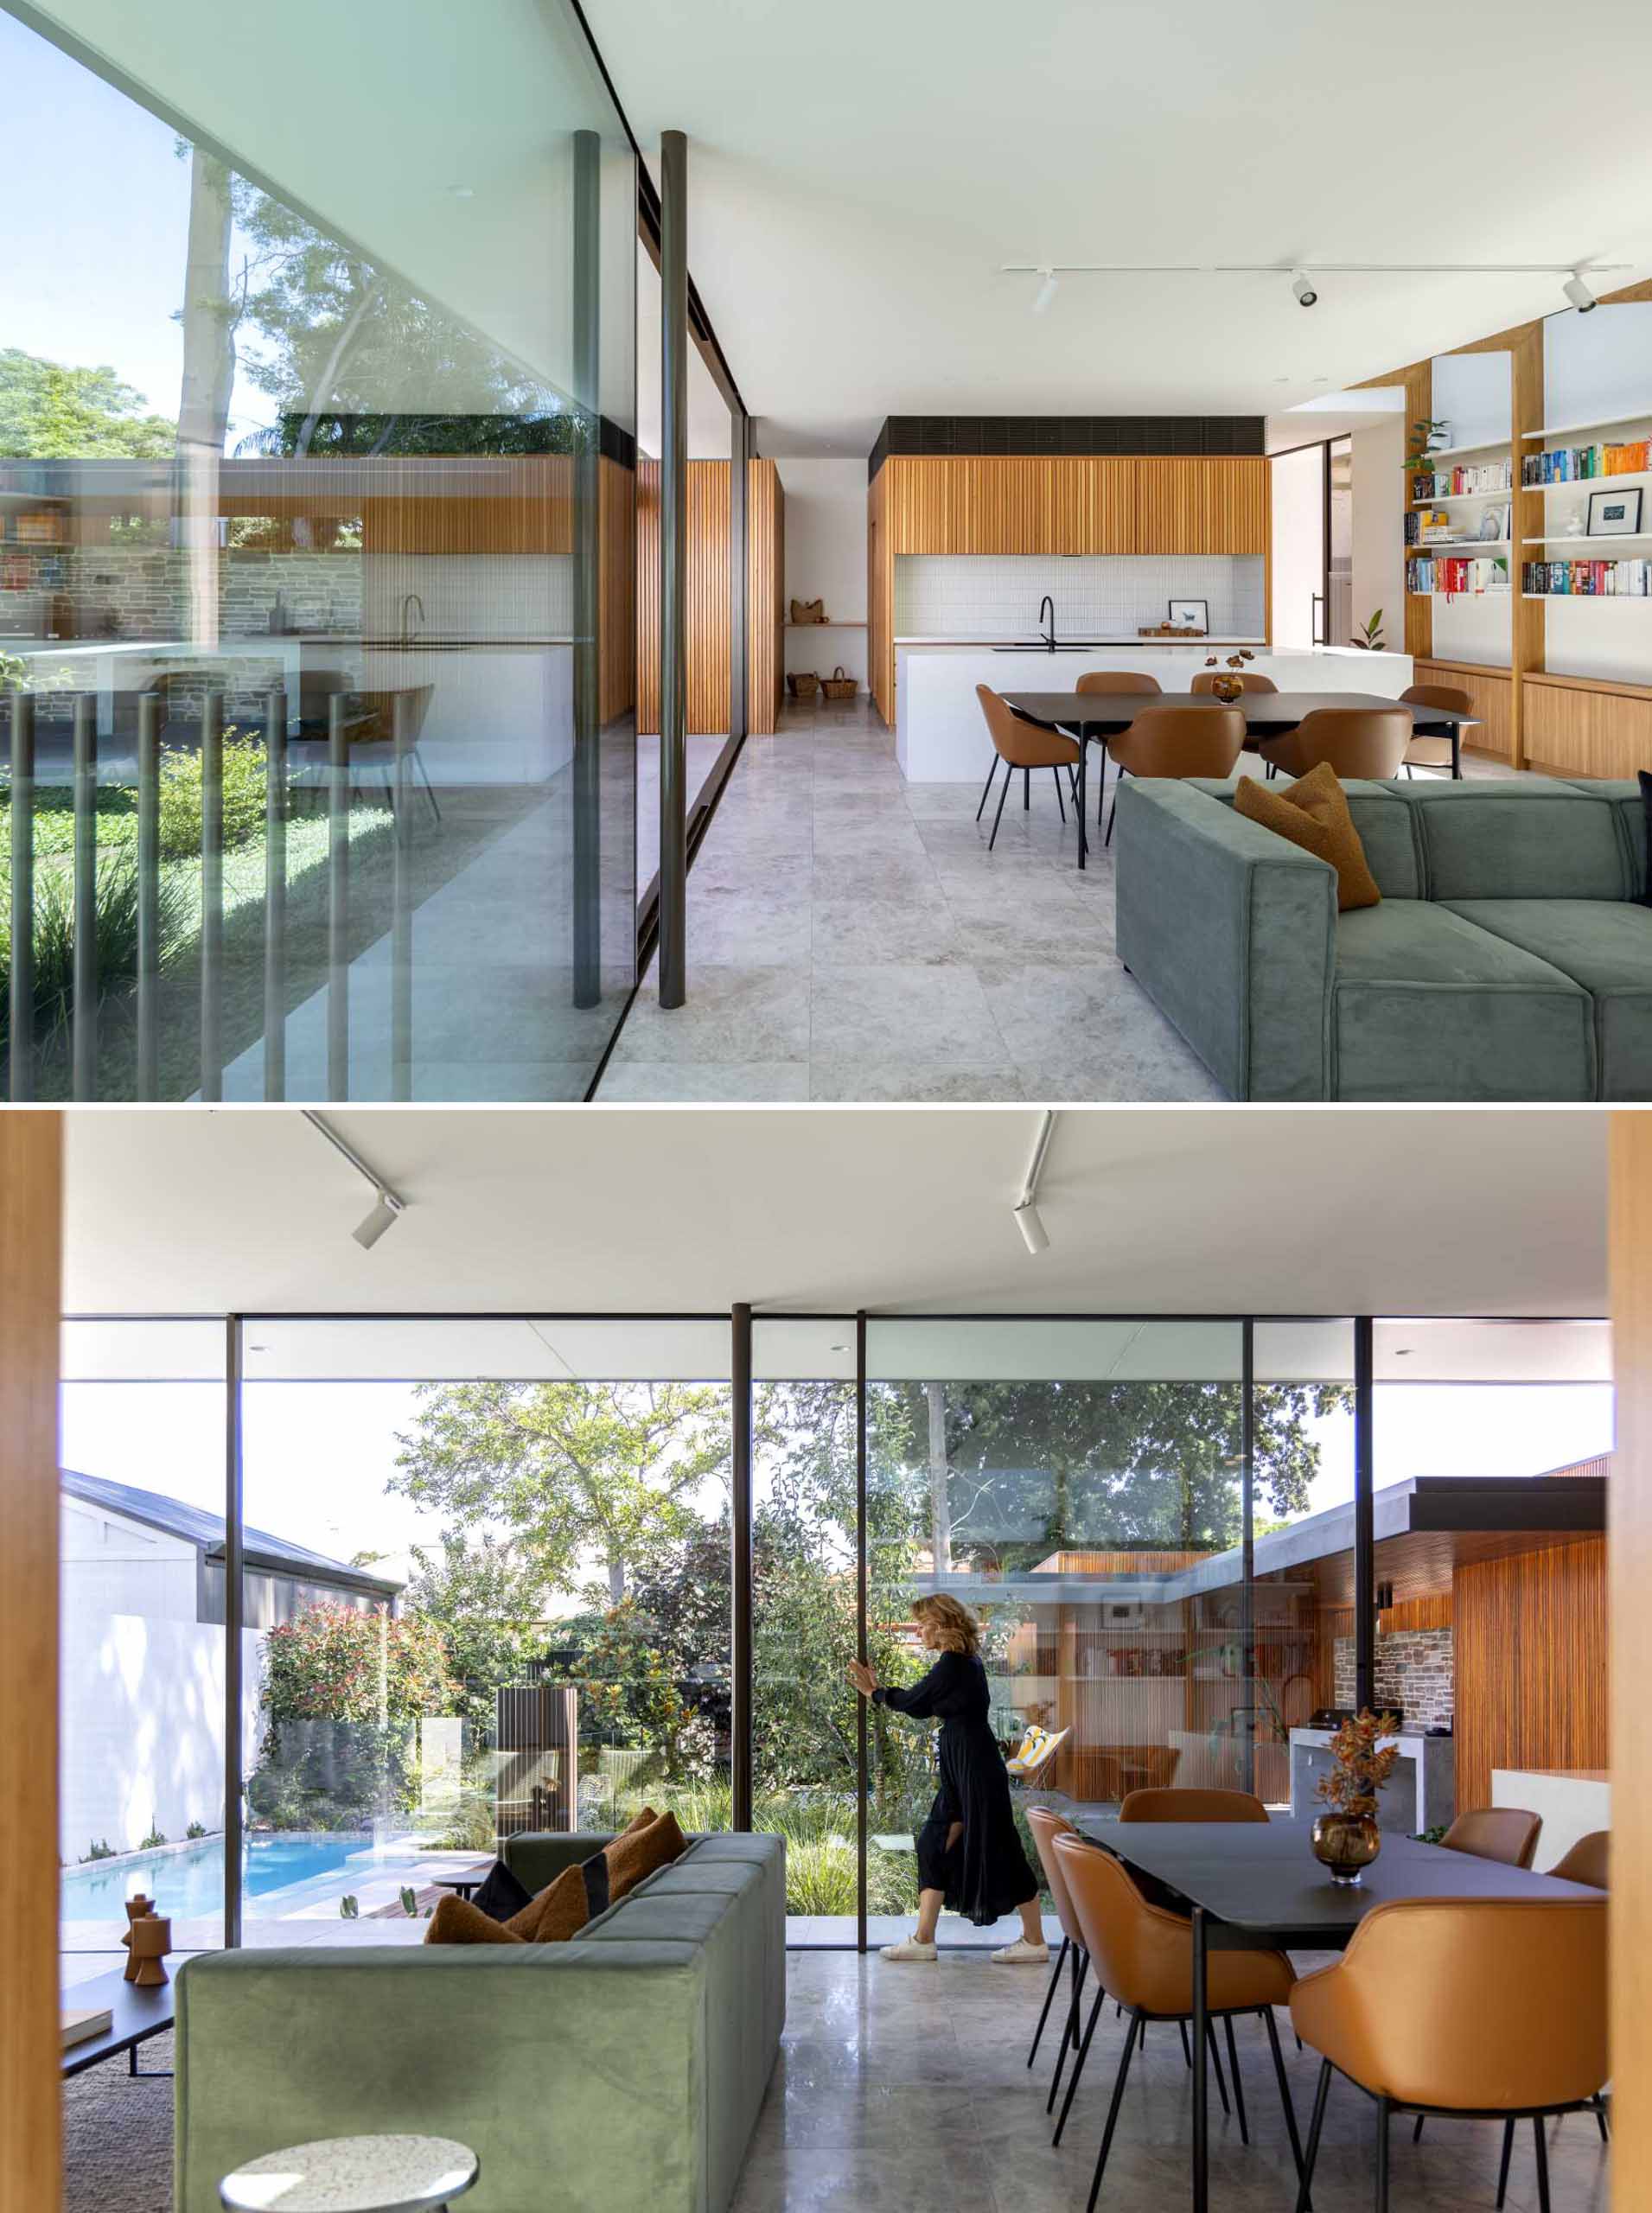 Обеденная зона открытой планировки отделяет кухню от гостиной, а раздвижные стеклянные двери высотой 9 футов (3 м) соединяют внутреннее и внешнее пространство.